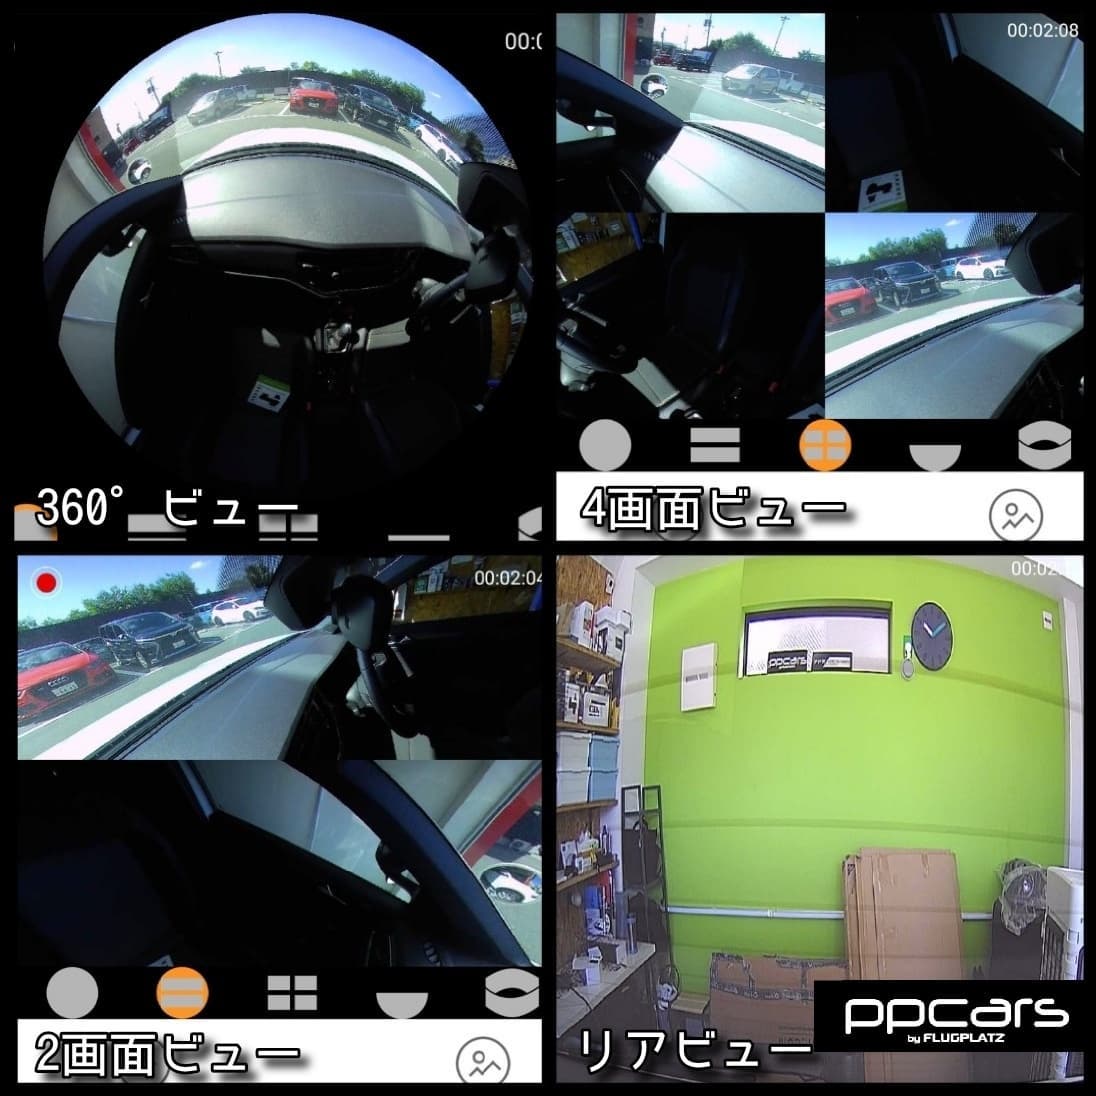 T-Roc (A1) x 360°全方位+リアカメラドライブレコーダー FPZ-DVR360x